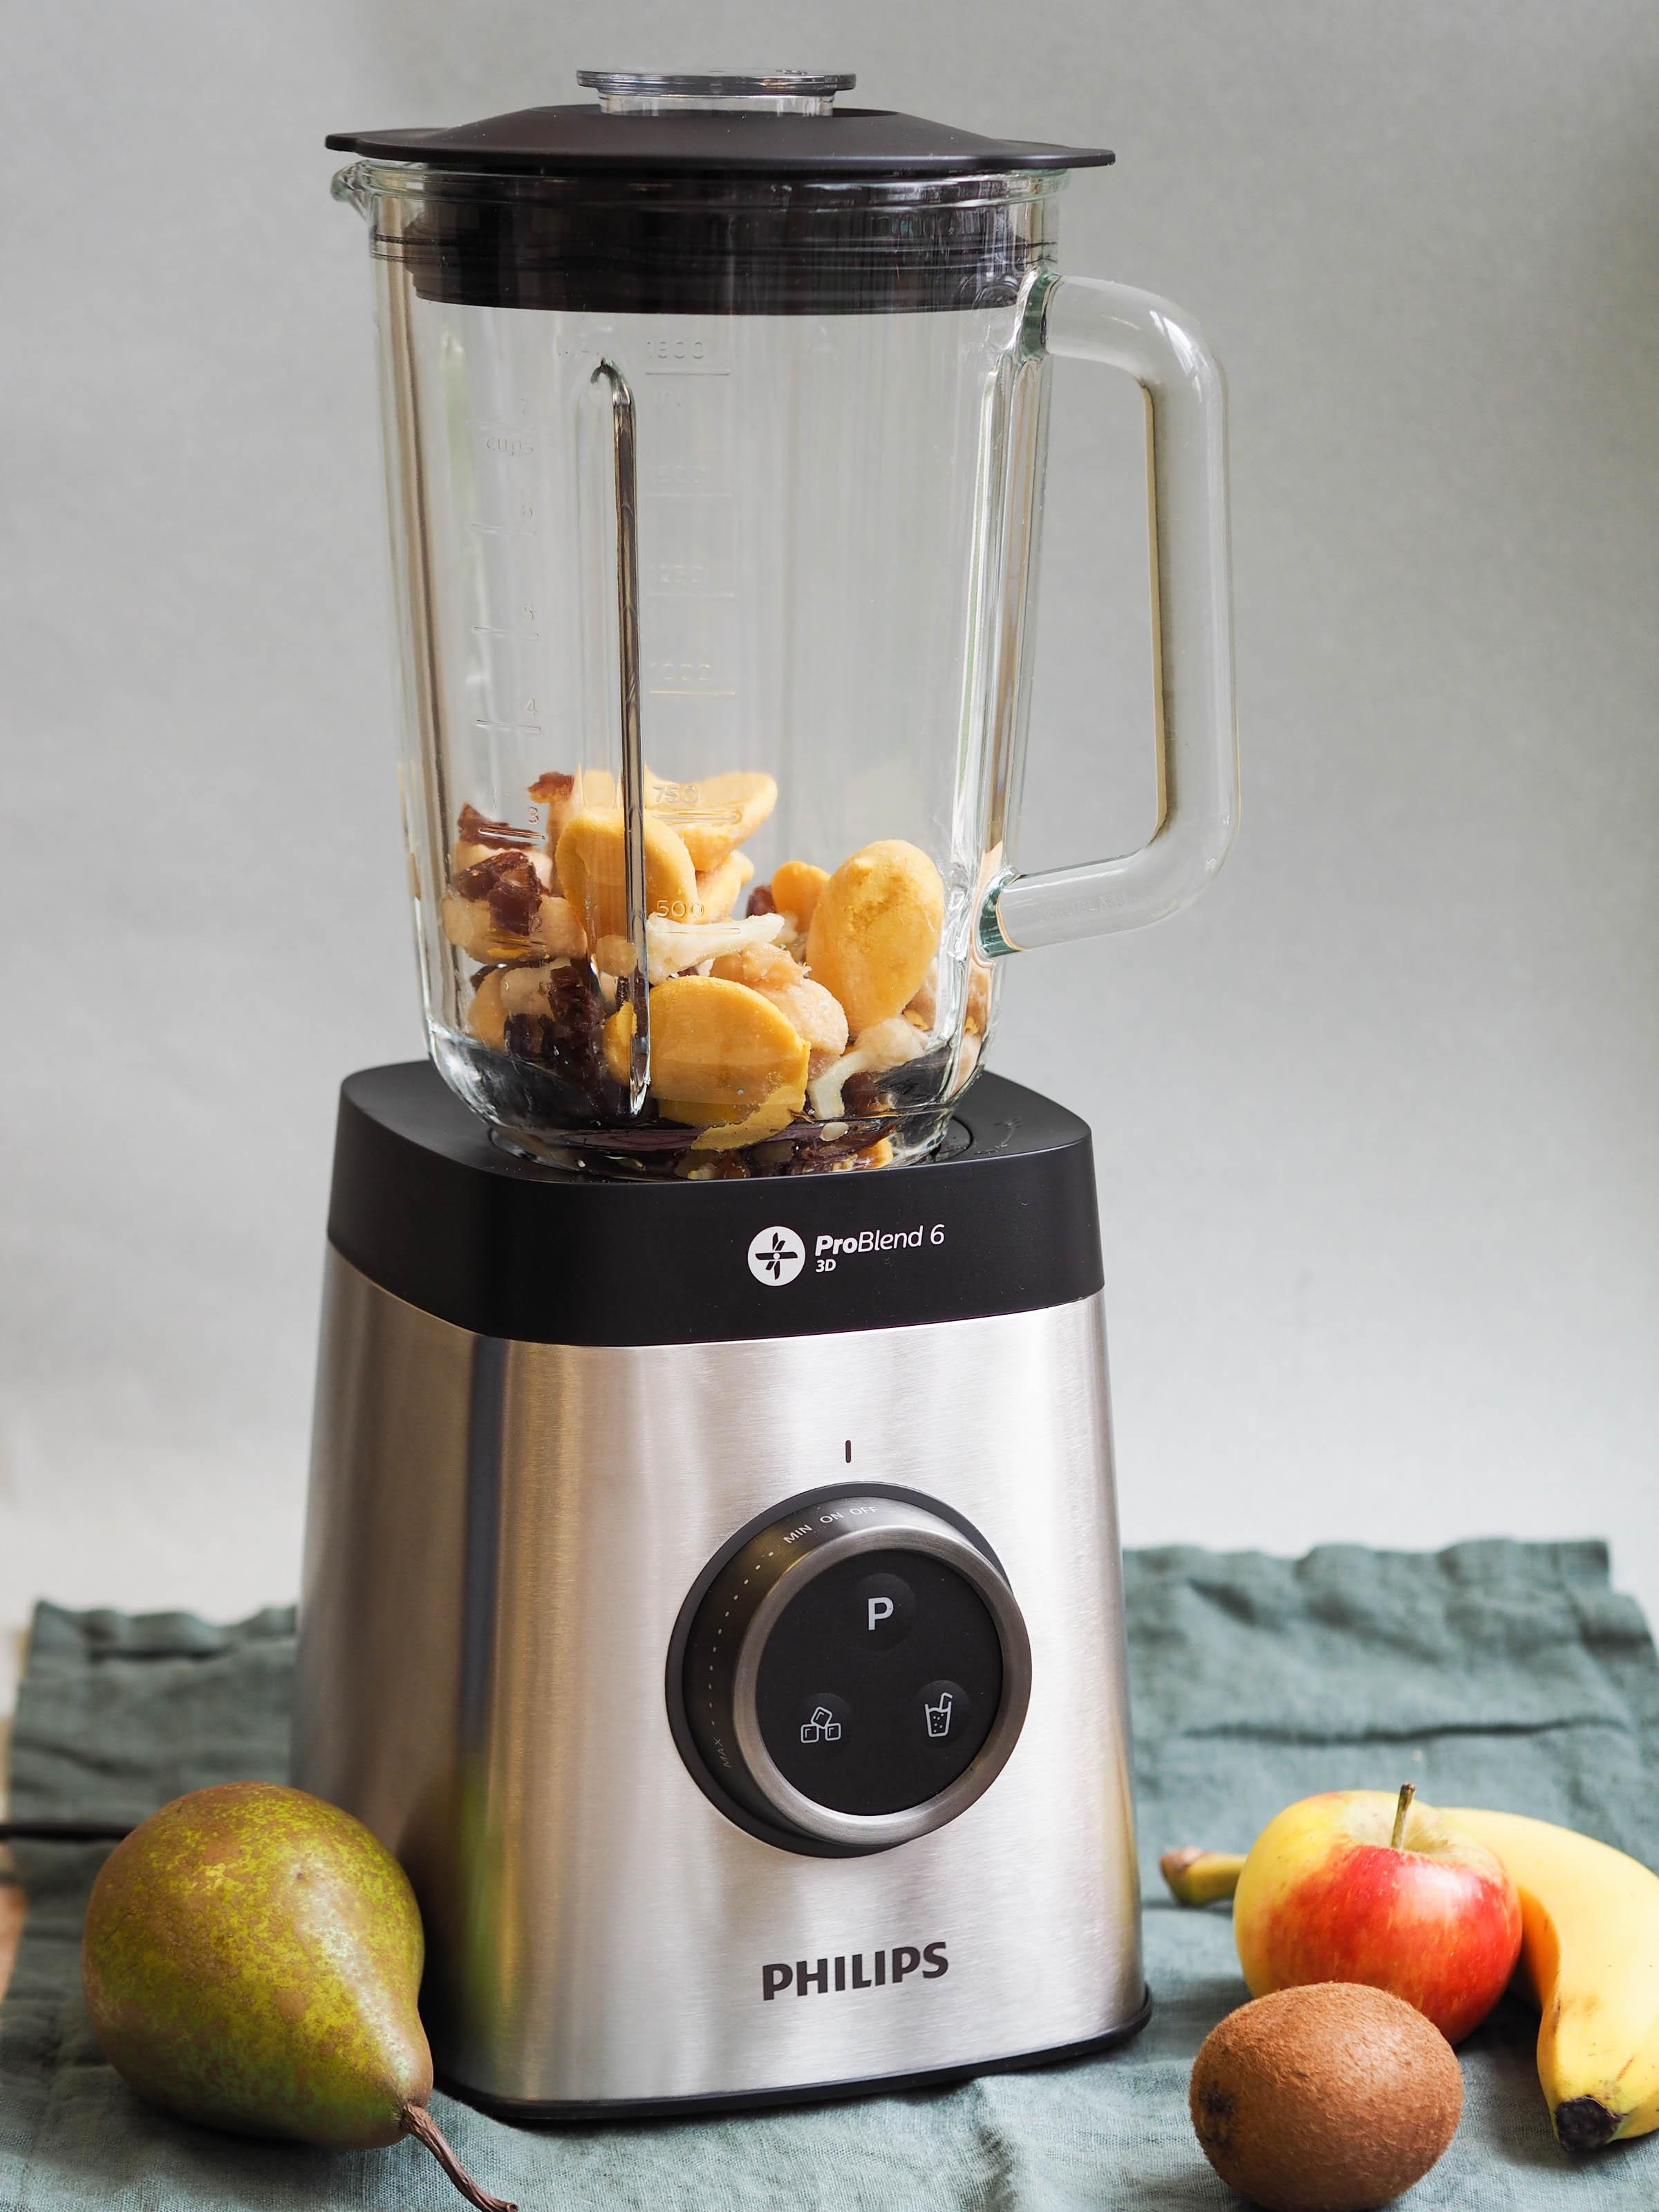 Wholey-Früchte einfach direkt tiefgekühlt in den Mixer - für "Philips ProBlend 6" kein Problem #frühstücksbowl #philips